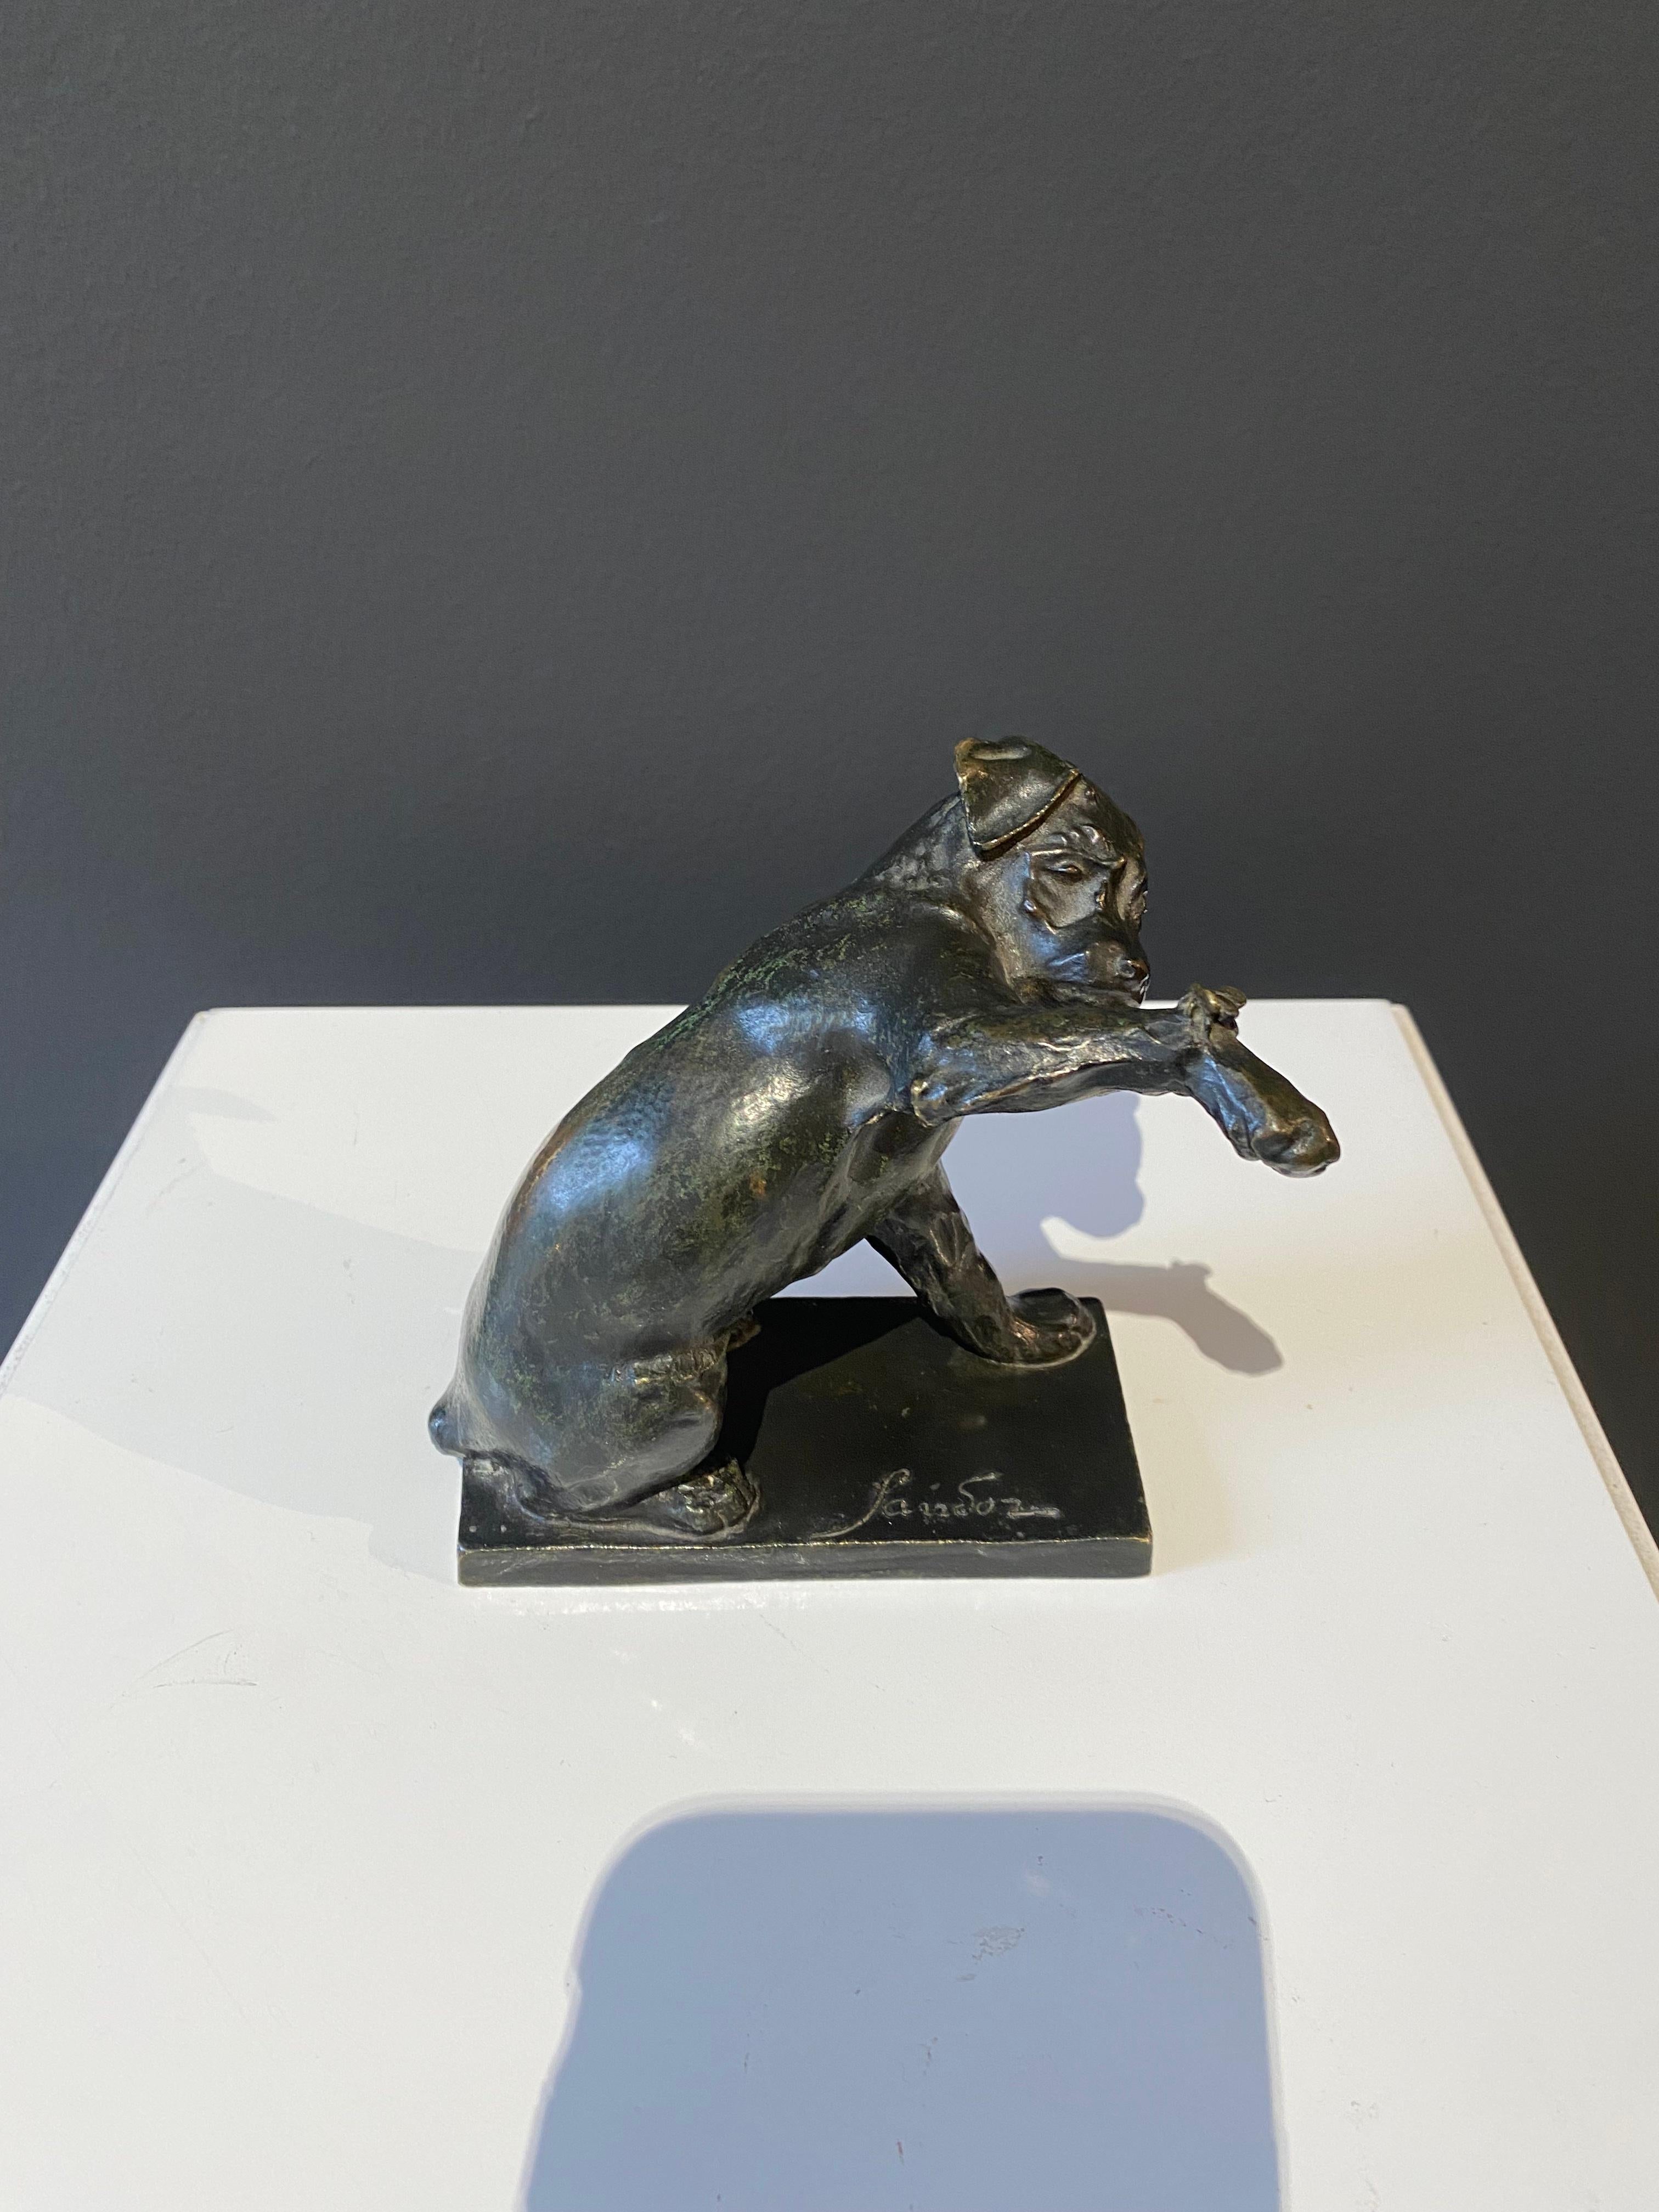 Chien à la sauterelle, Sandoz, Dog, Sculpture, Bronze, Animal, 1910's - Modern Art by Edouard-Marcel Sandoz